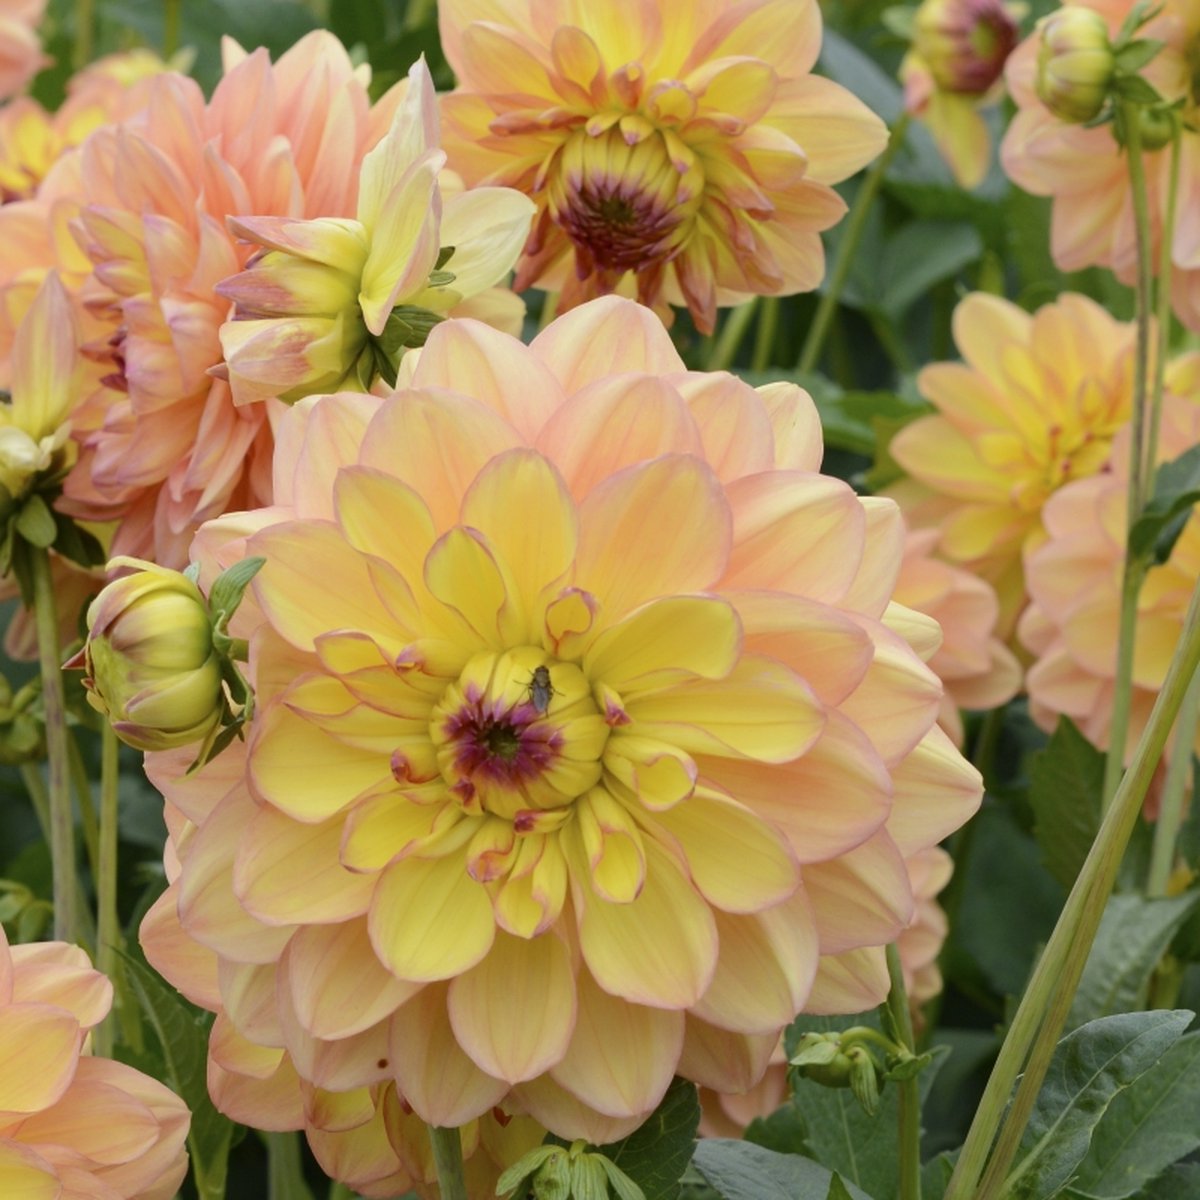 Dahlia Happy Go Lucky | 3 stuks | Decoratieve Dahlia | Knol | Geel | Roze | Dahlia Knollen van Top Kwaliteit | 100% Bloeigarantie | QFB Gardening